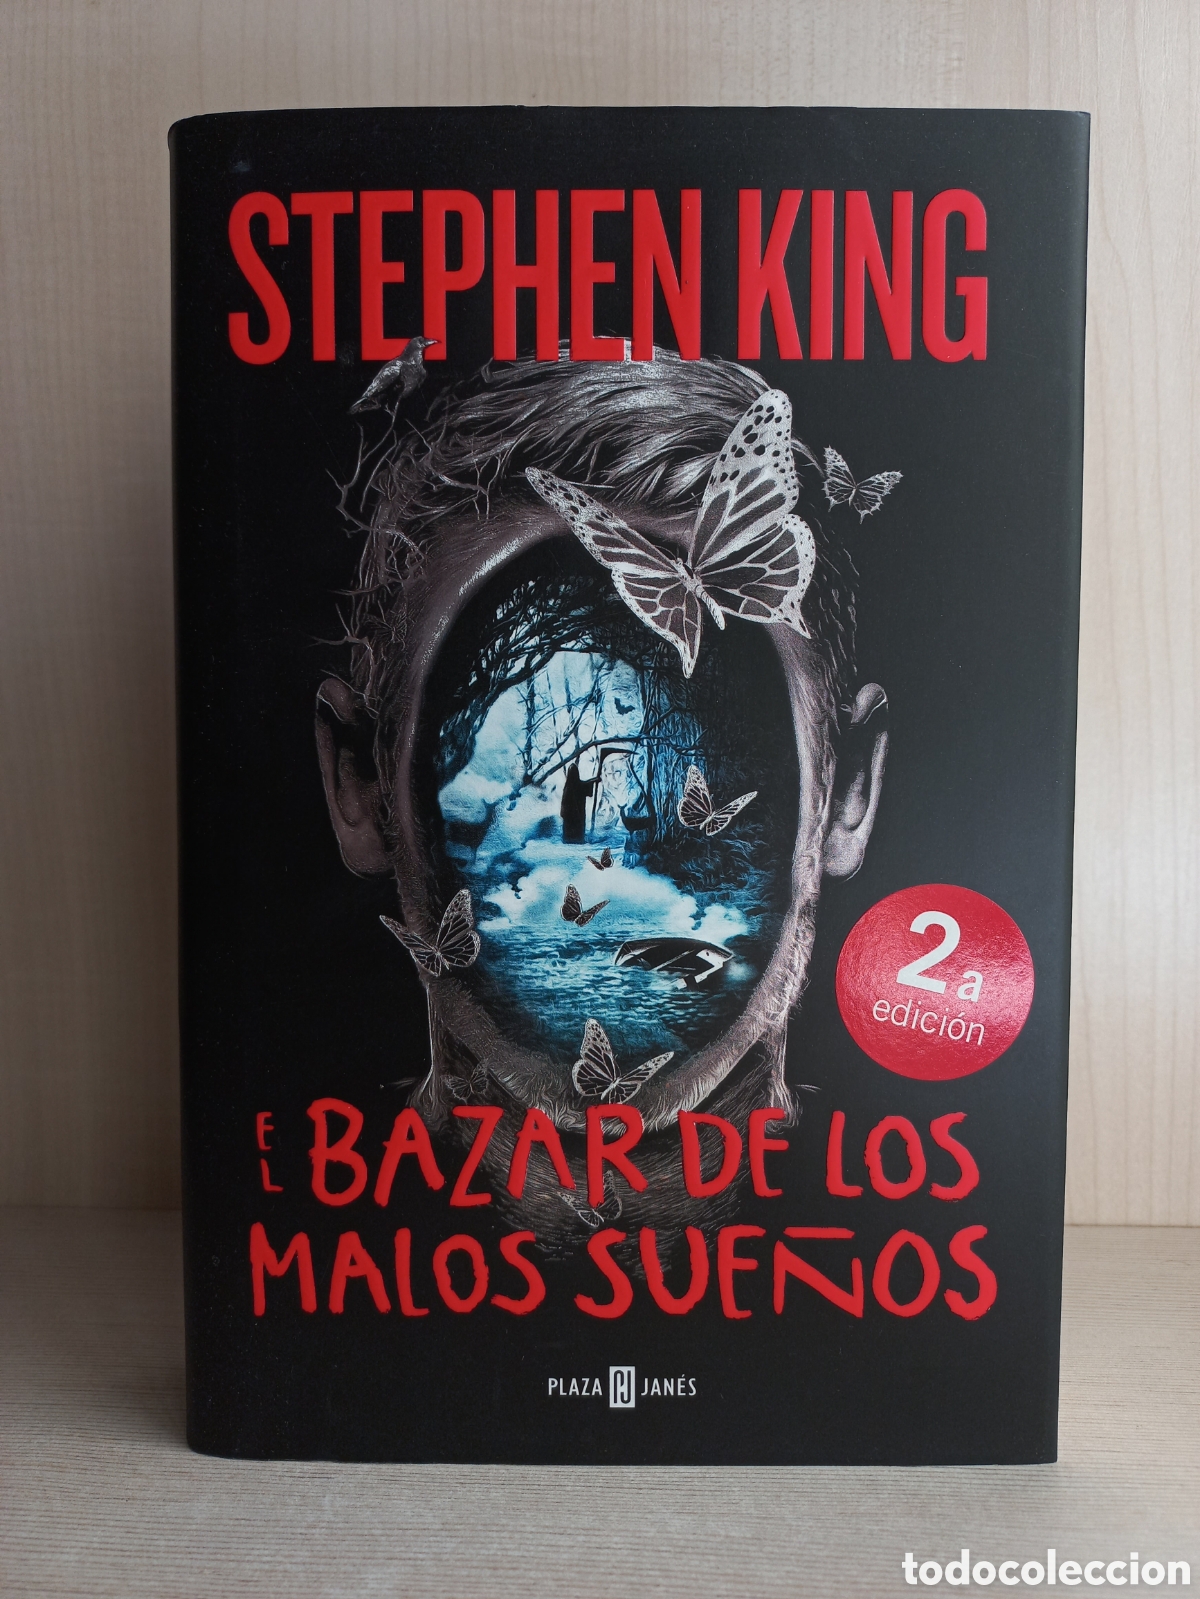 el bazar de los malos sueños. stephen king. pla - Buy Used horror, mystery  and crime books on todocoleccion